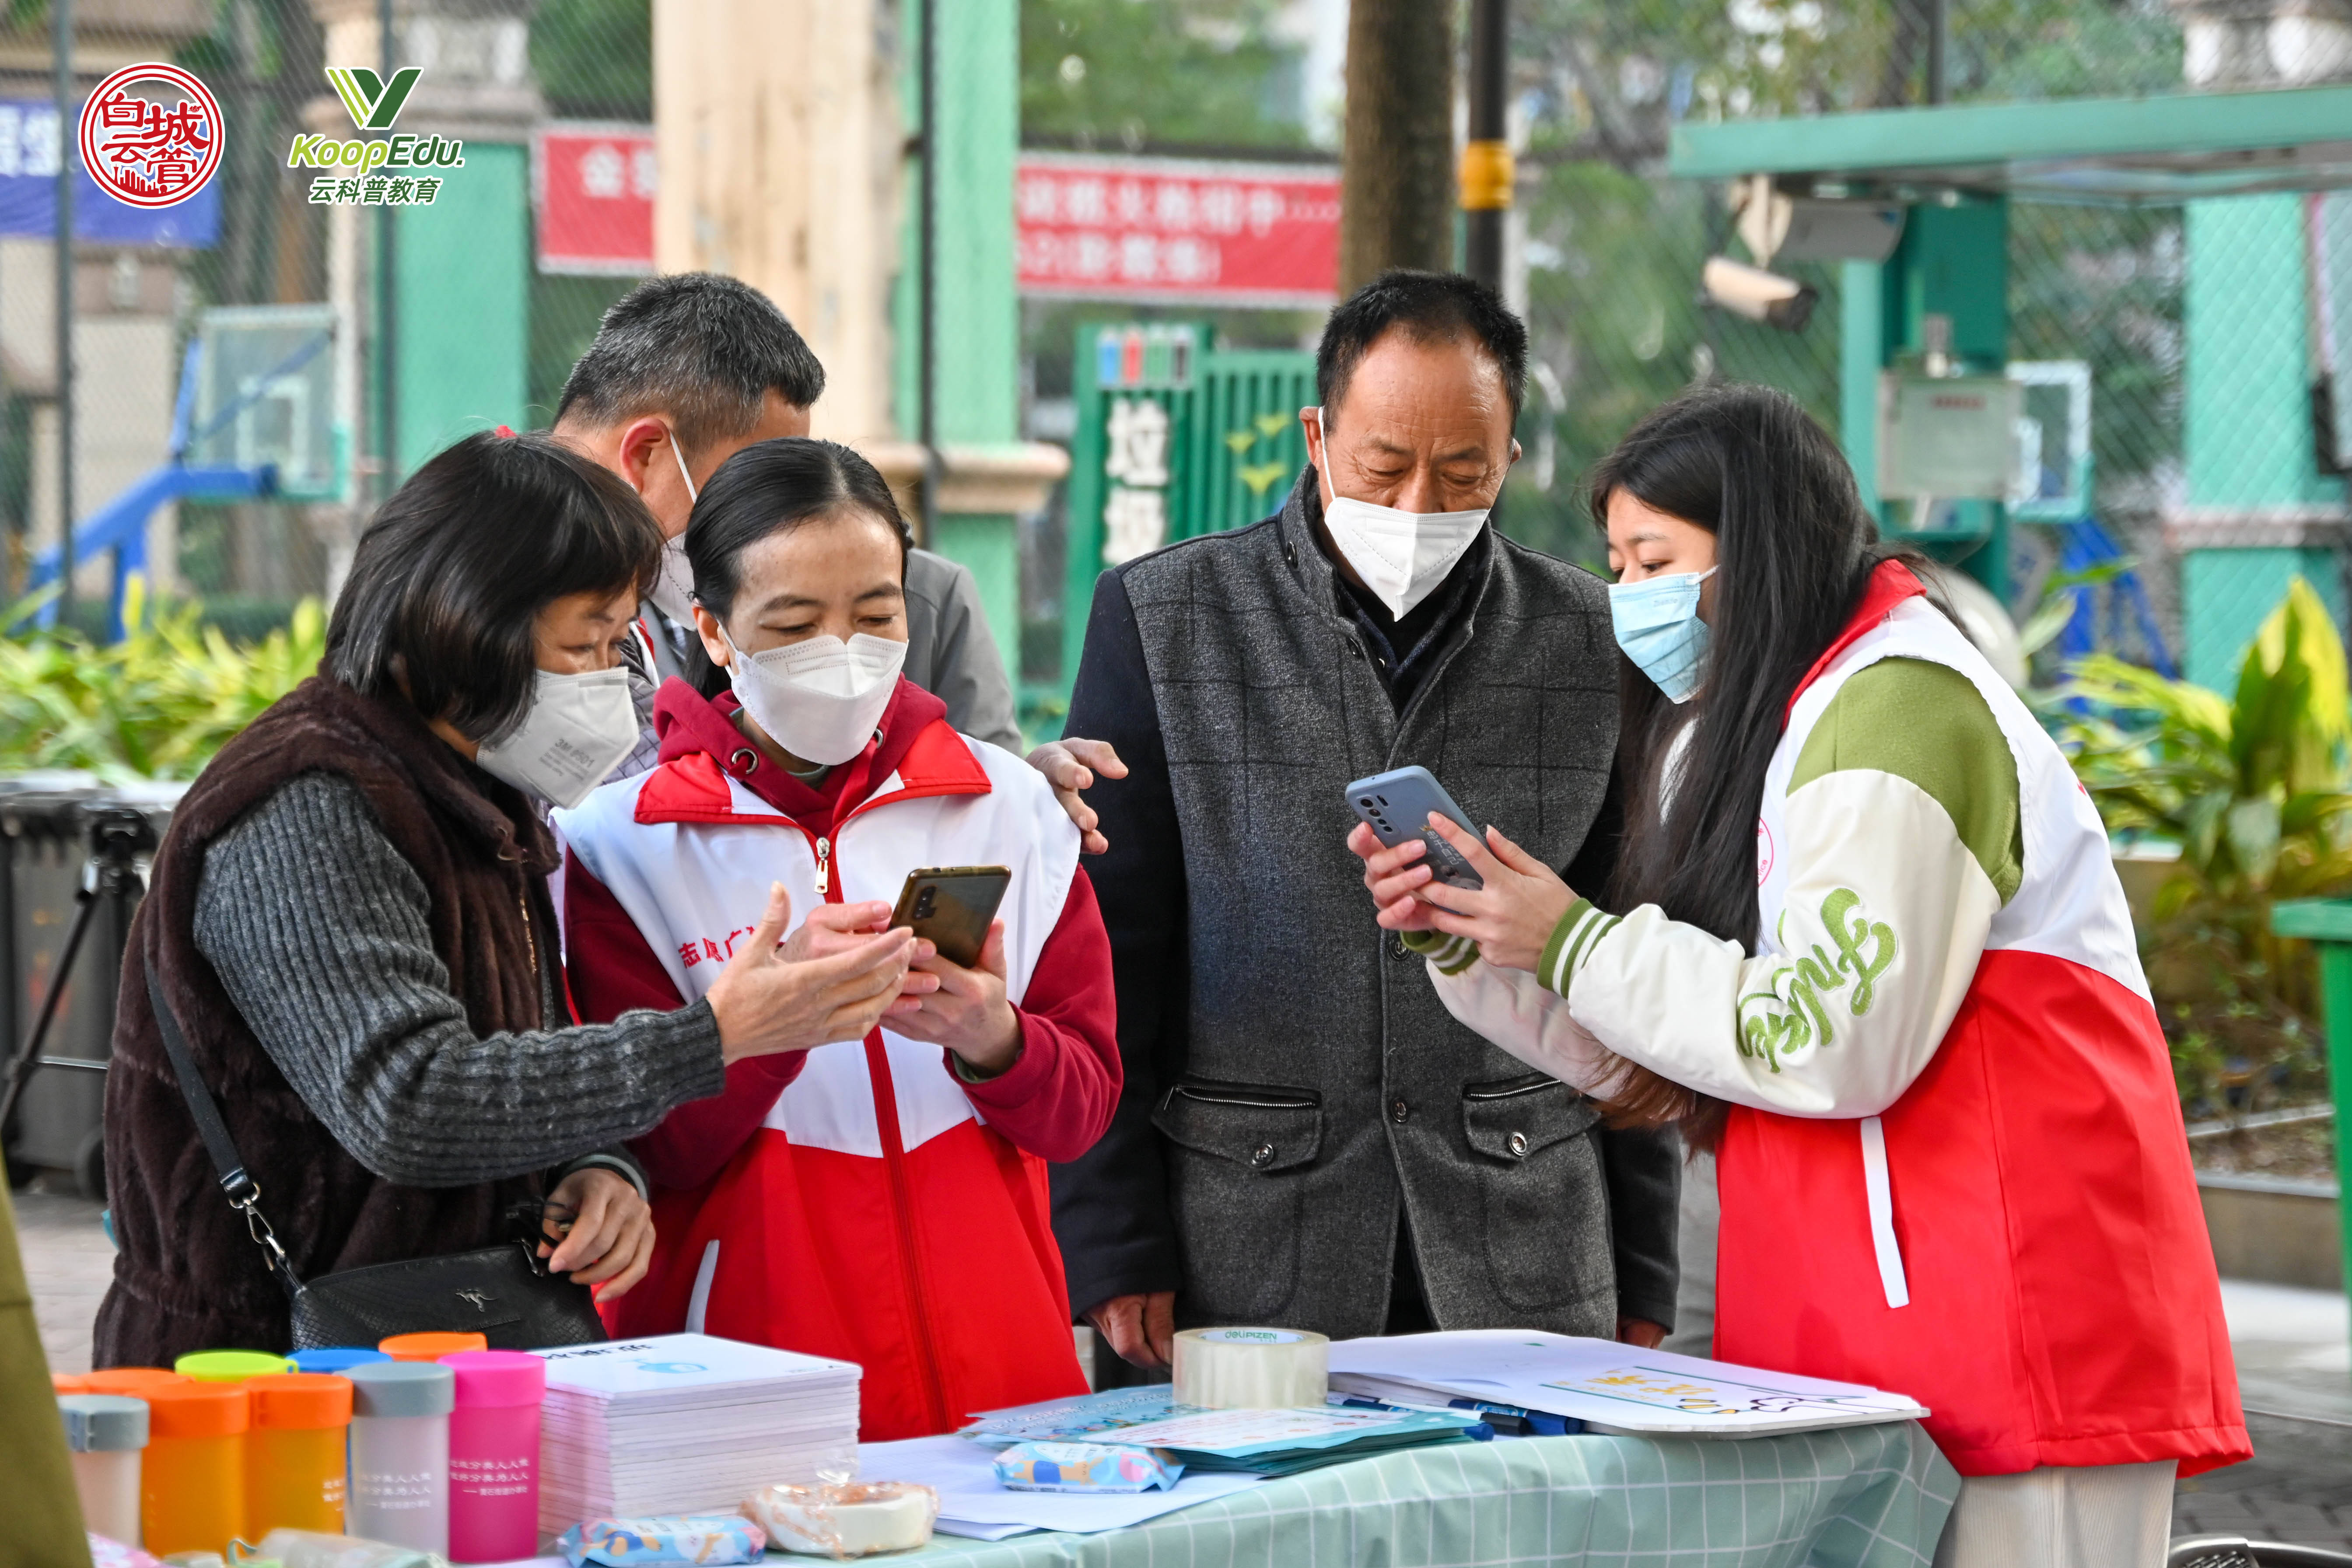 广州市白云区在全国首创“云站桶” 寻找垃圾分类“优秀居民”